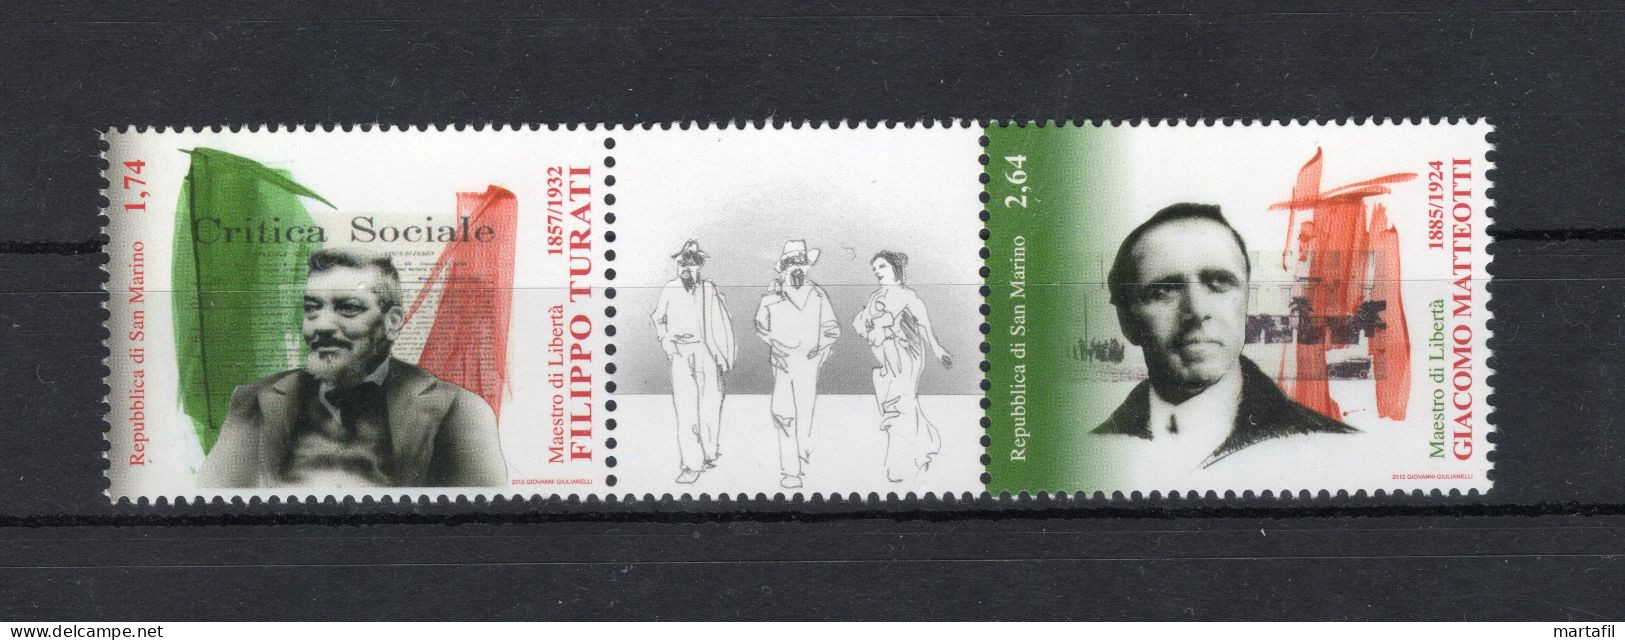 2012 SAN MARINO SET MNH ** 2375/2376 Maestri Di Libertà, Giacomo Matteotti E Filippo Turati - Unused Stamps